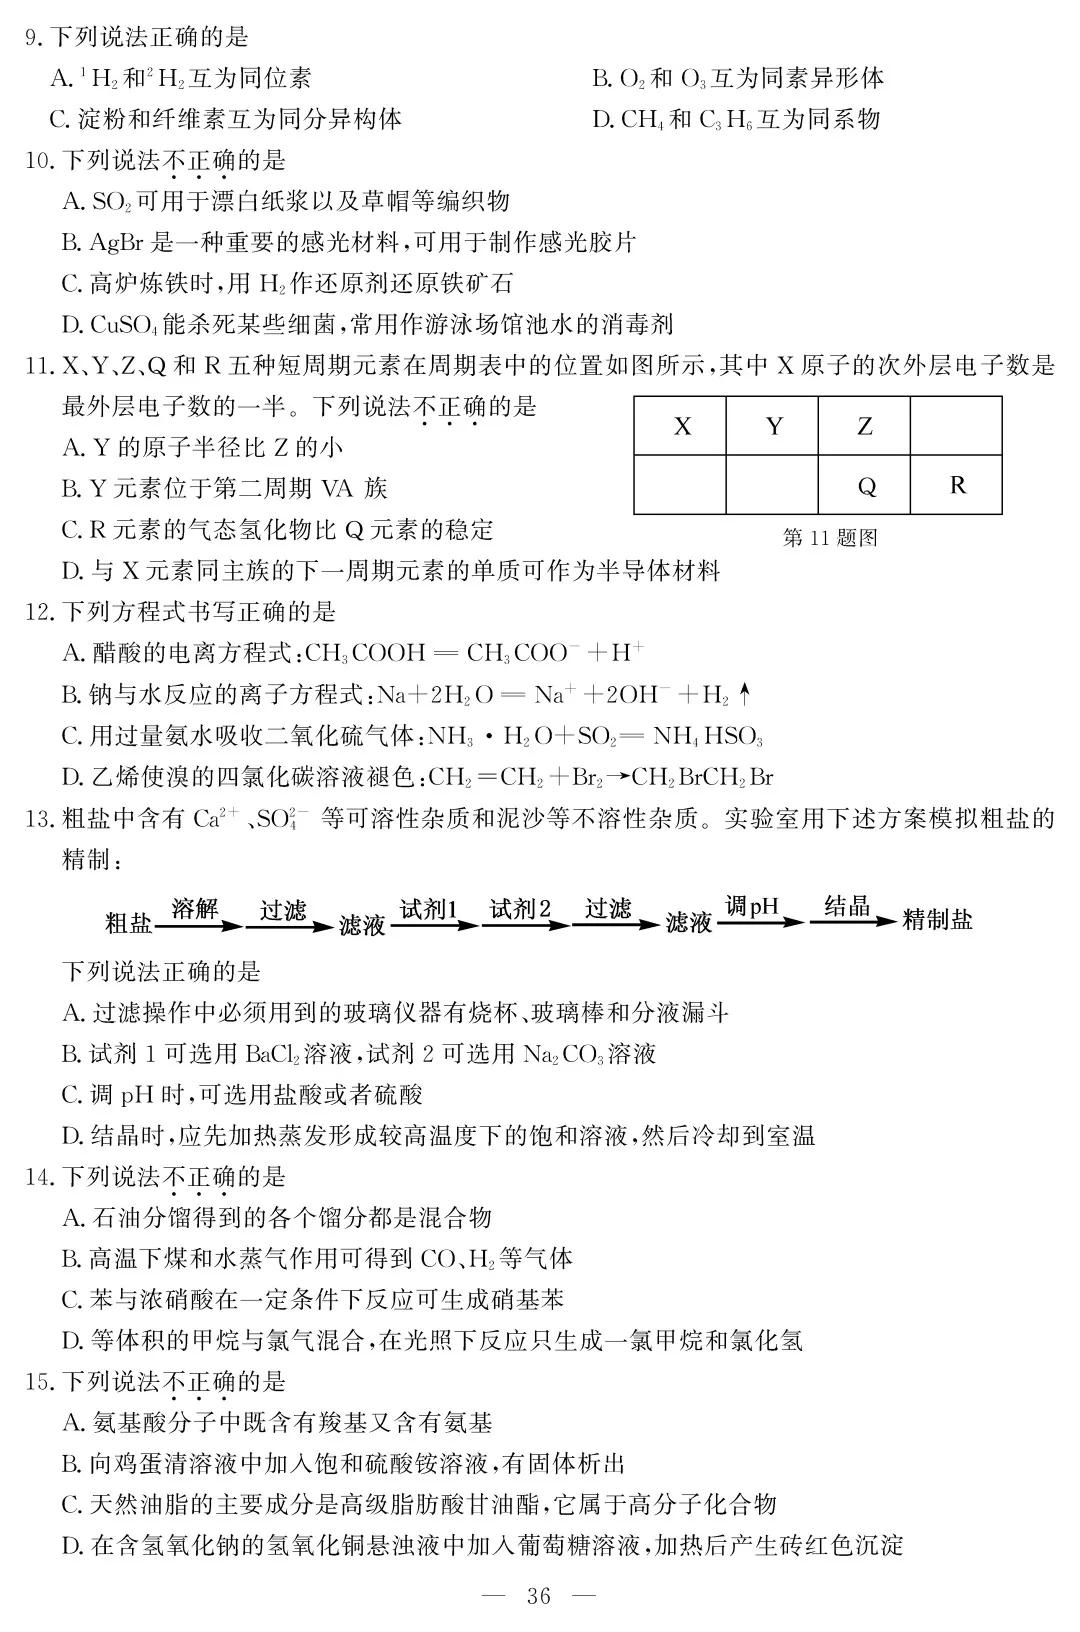 浙江省2020年7月学业水平考试化学试题 图片版